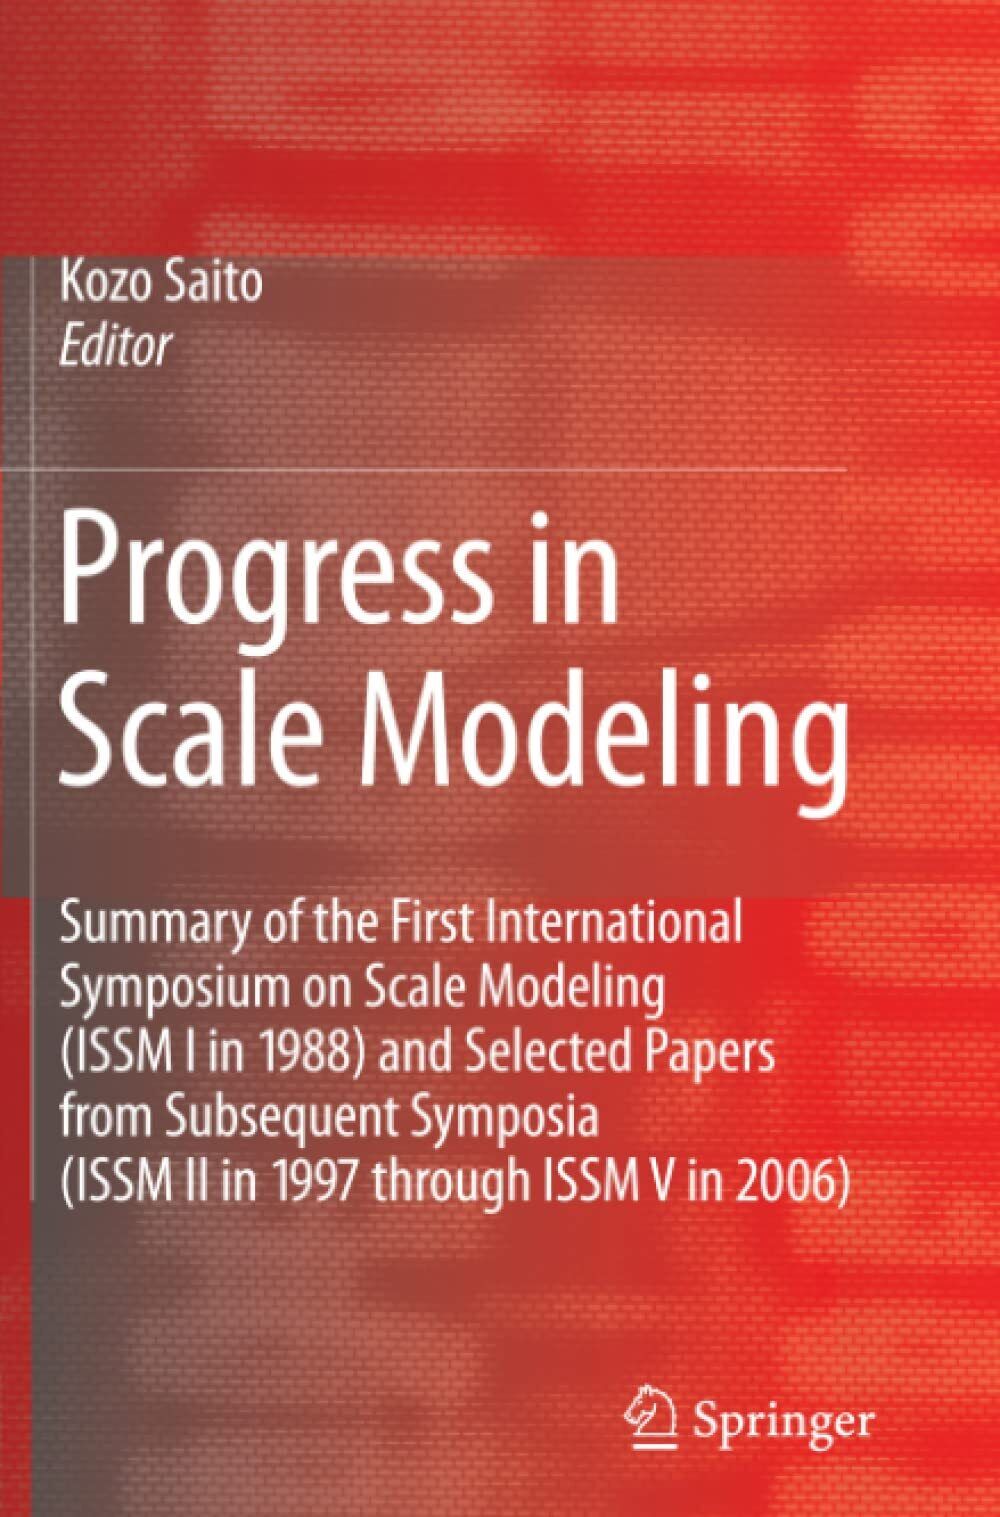 Progress in Scale Modeling - Kozo Saito - Springer, 2010